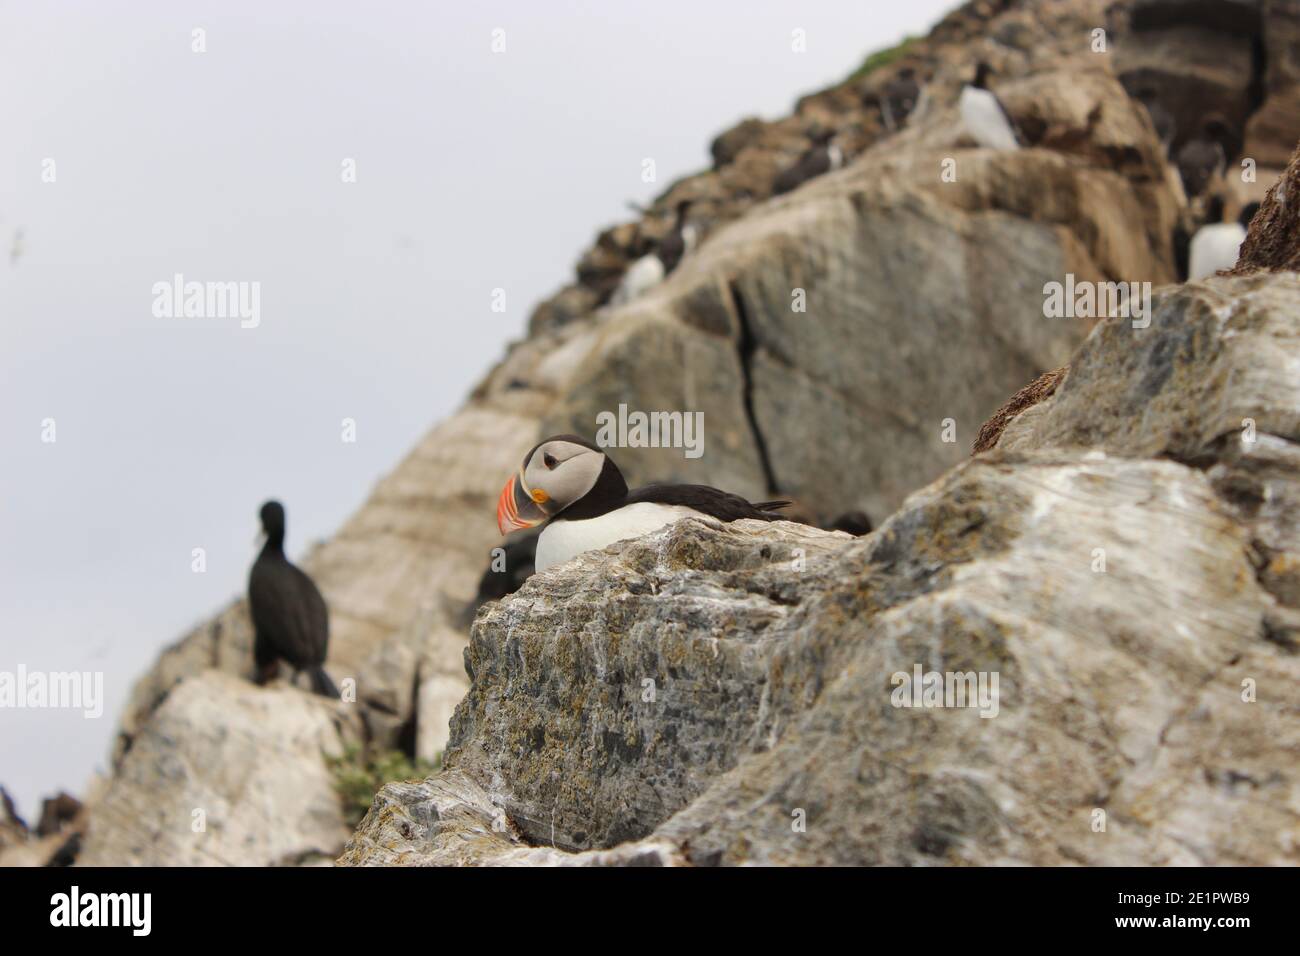 Oiseaux de macareux sauvages dans leur habitat naturel à Hornøya, Norvège Banque D'Images